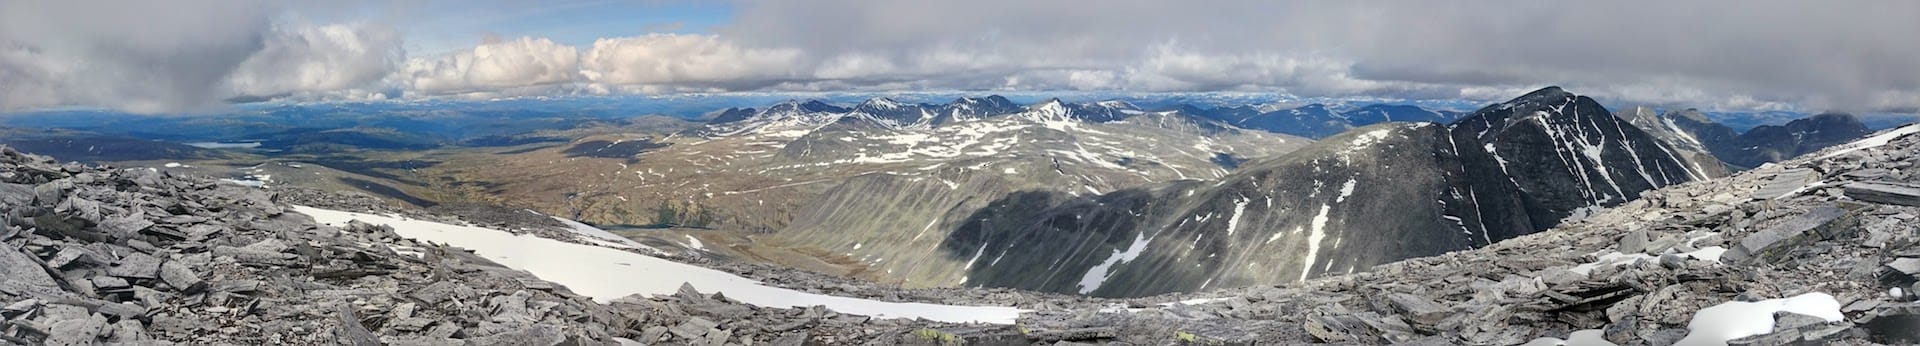 Utsikt fra Storronden mot blant annet Rondeslottet, Vinjeronden, Veslesmeden og Storsmeden